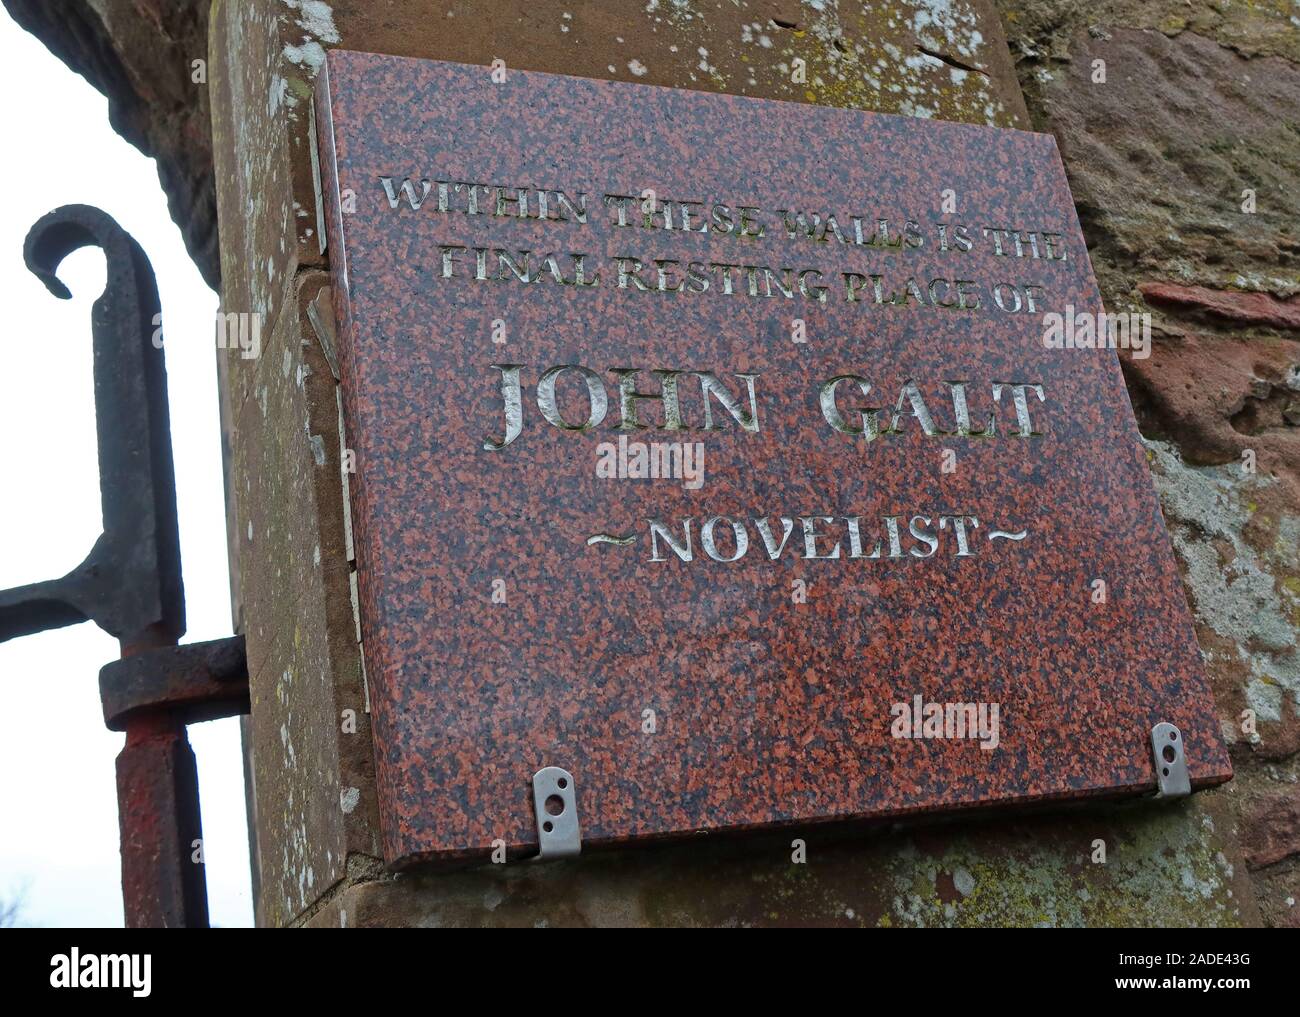 John Galt, novelista, Greenock, Inverkip Street Cemetery,Greenock,Inverclyde, escocia, Reino Unido, grave,placa de último lugar de descanso Foto de stock